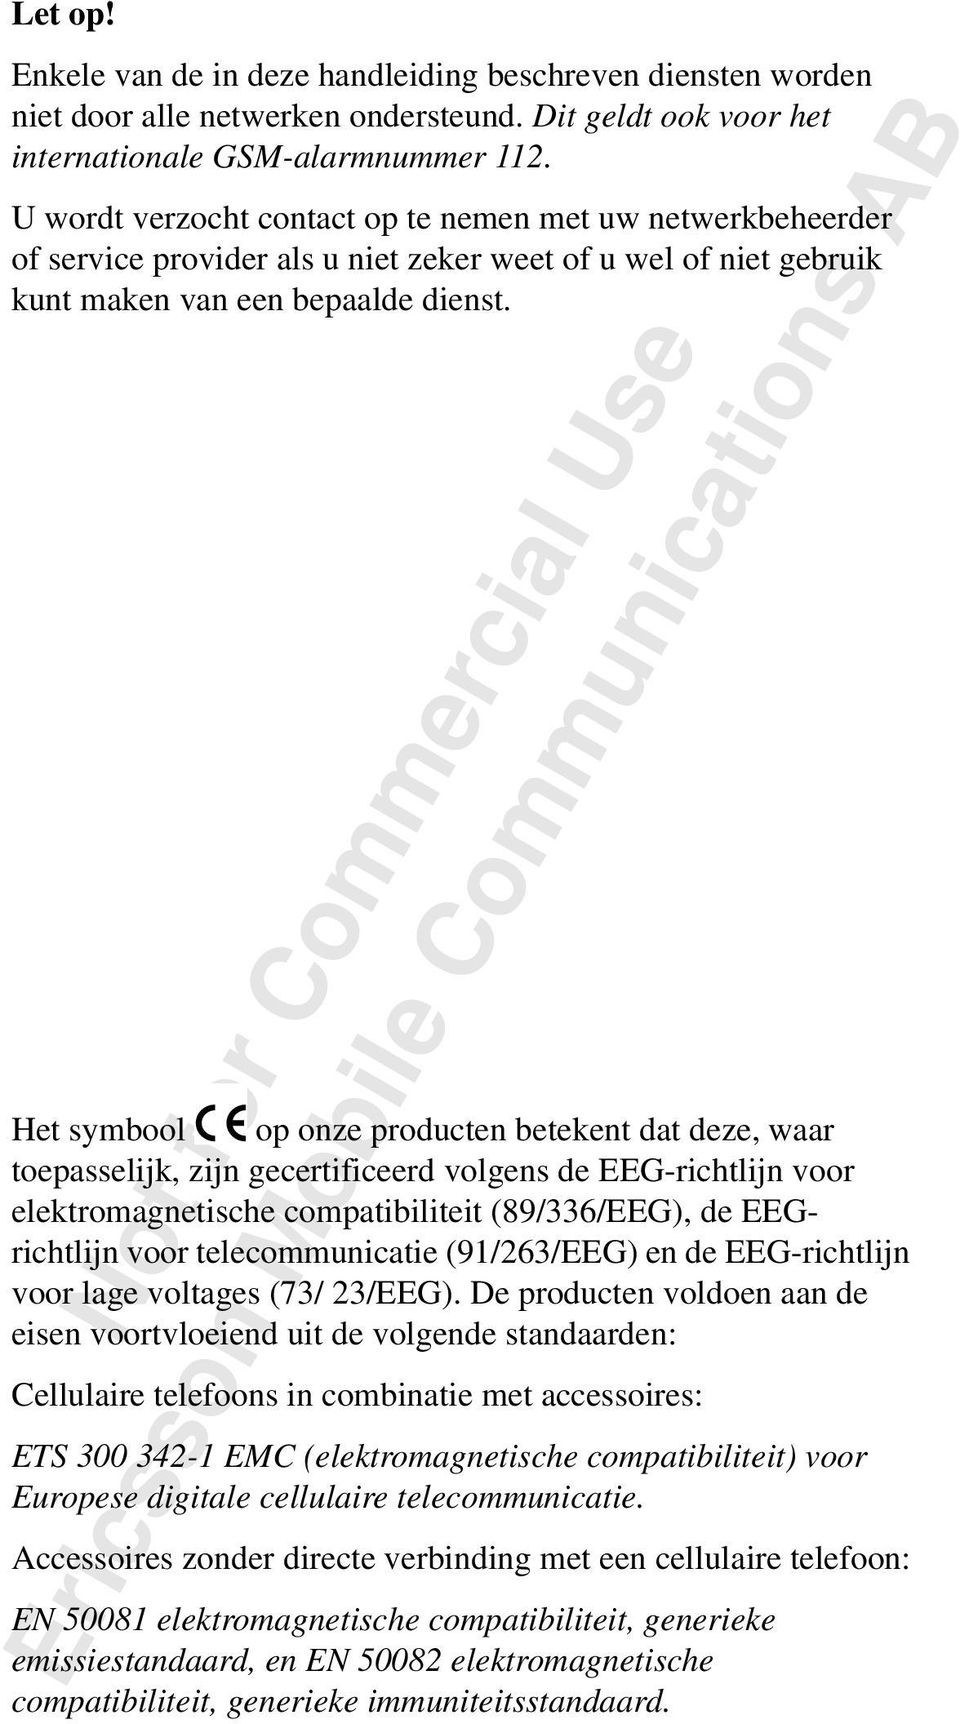 Het symbool op onze producten betekent dat deze, waar toepasselijk, zijn gecertificeerd volgens de EEG-richtlijn voor elektromagnetische compatibiliteit (89/336/EEG), de EEGrichtlijn voor